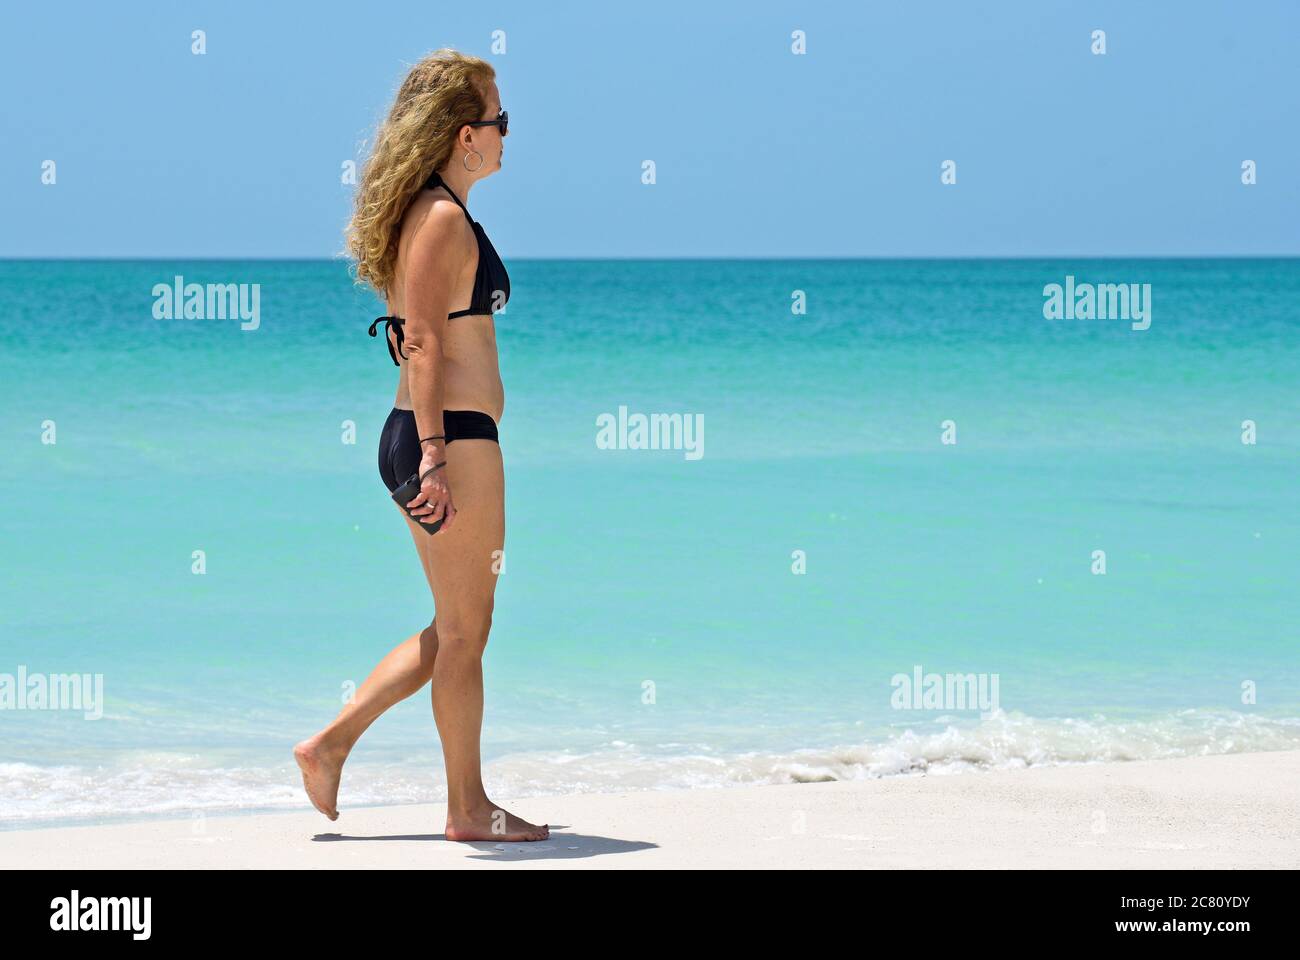 HOLMES BEACH, ANNA MARIA ISLAND, FL / USA - 1. Mai 2018: Schöne reife Frau bei einem Spaziergang am Strand und einem schönen Sommertag. Stockfoto